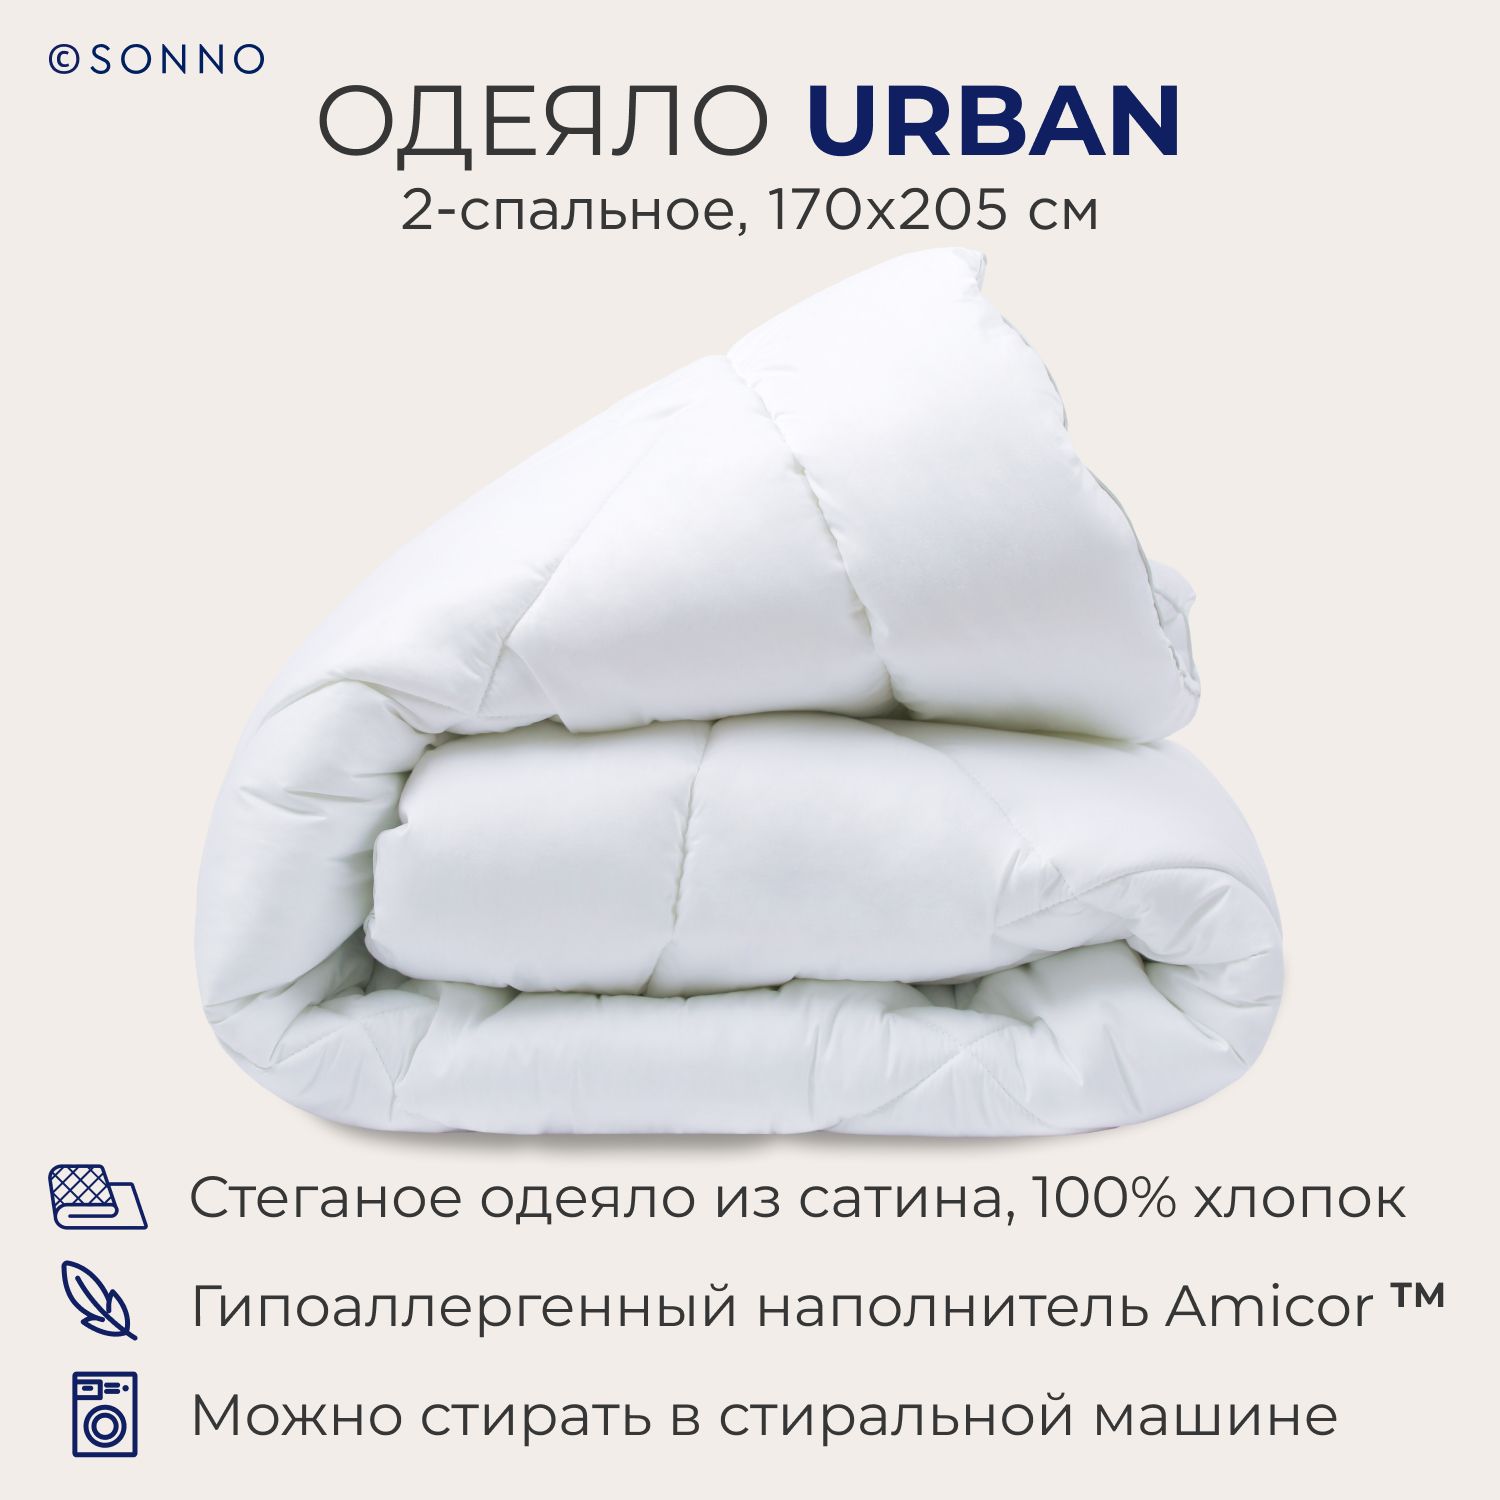 Одеяло SONNO URBAN 2-спальное,170х205 см, стеганое, 350 г/м2, Цвет Ослепительно белый